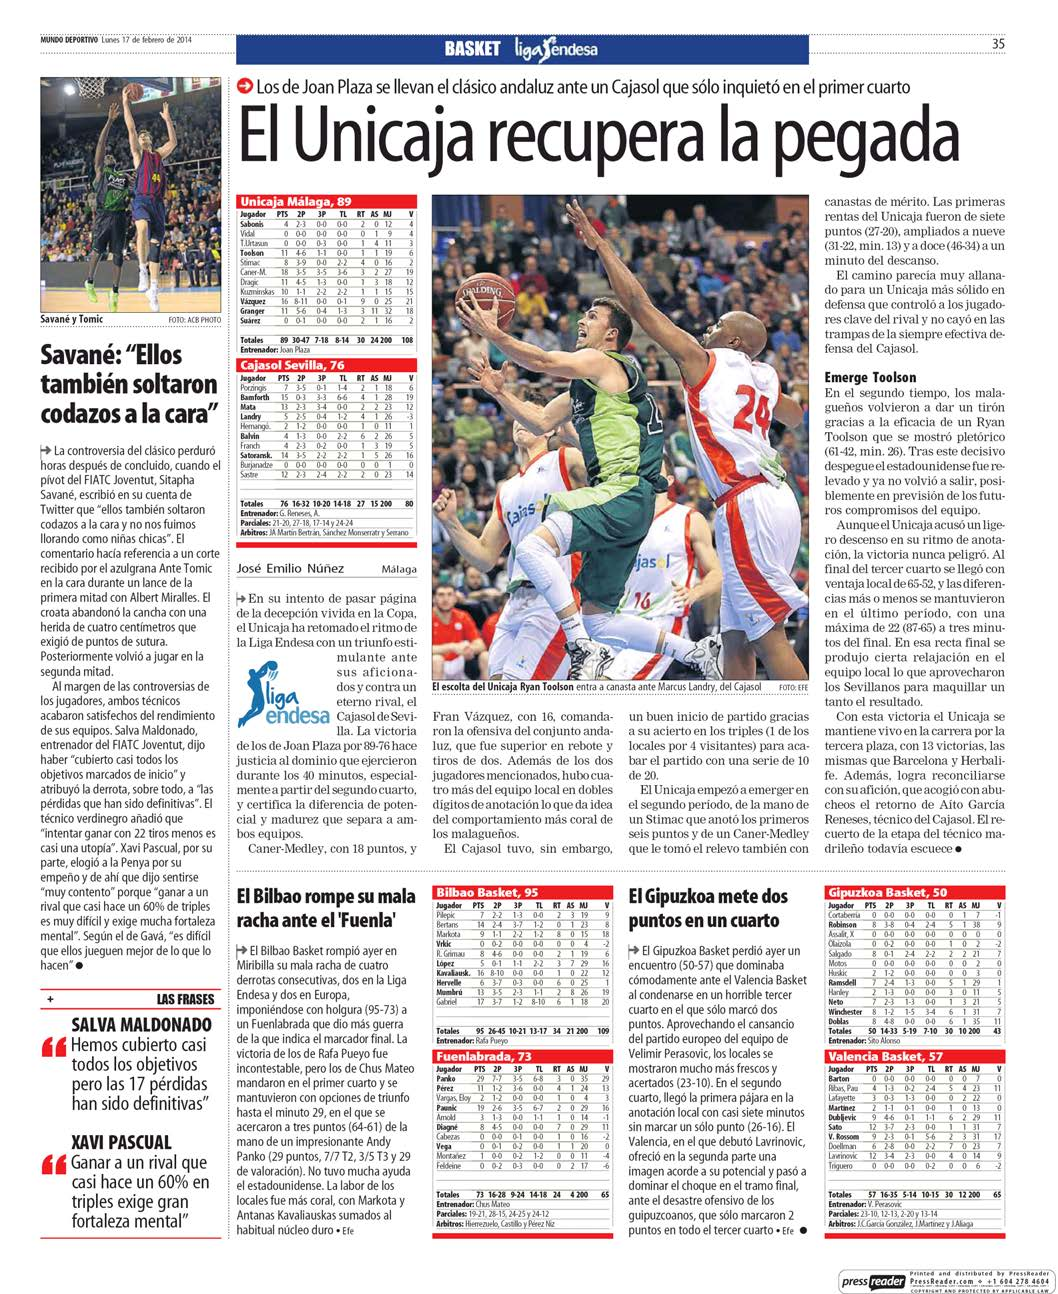 17/2/2014 Kiosko y Más - Mundo Deportivo - 17 feb. 2014 - Page #35 http://lector.kioskoymas.